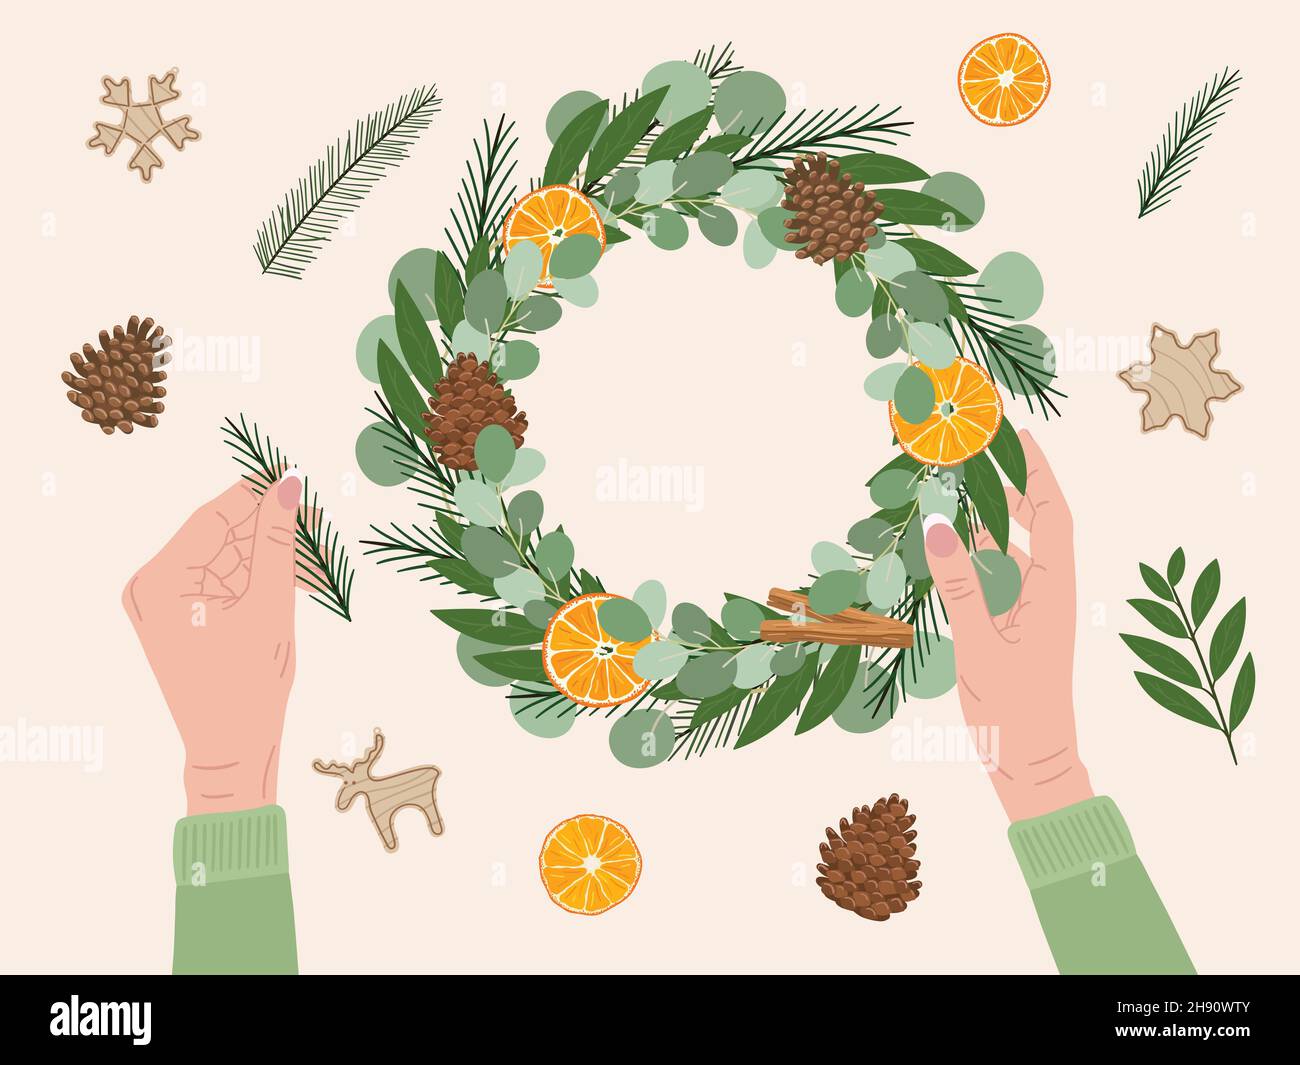 Les mains blanches des femmes tiennent et font couronne de Noël avec des matériaux écologiques.Sapin, cône de pin, cannelle, orange sec, baie,jouets en bois.ECO Noël con Illustration de Vecteur